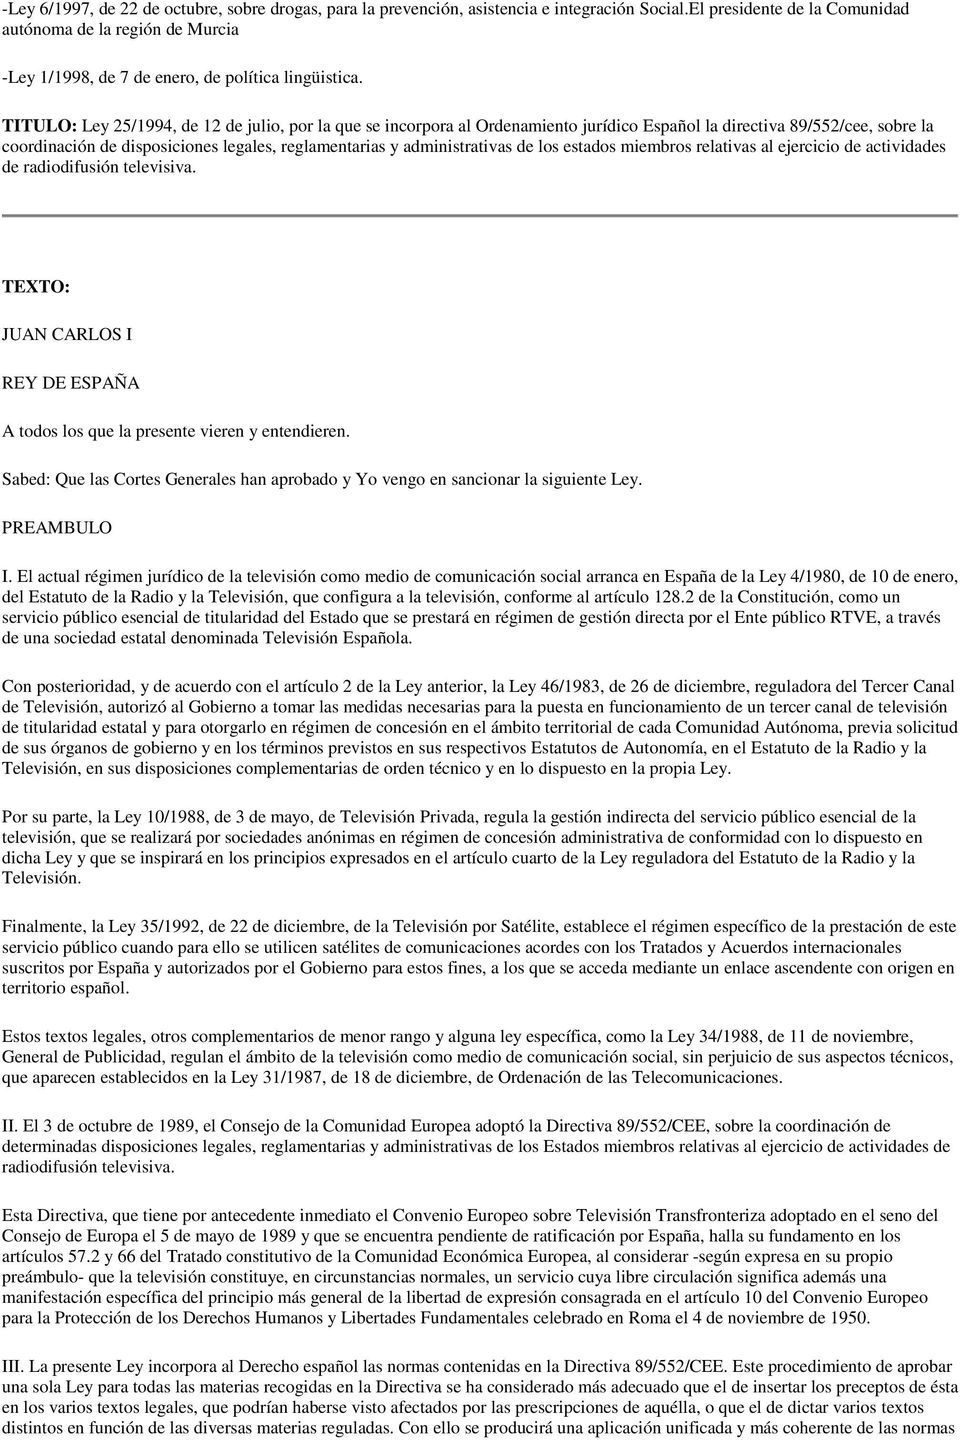 TITULO: Ley 25/1994, de 12 de julio, por la que se incorpora al Ordenamiento jurídico Español la directiva 89/552/cee, sobre la coordinación de disposiciones legales, reglamentarias y administrativas